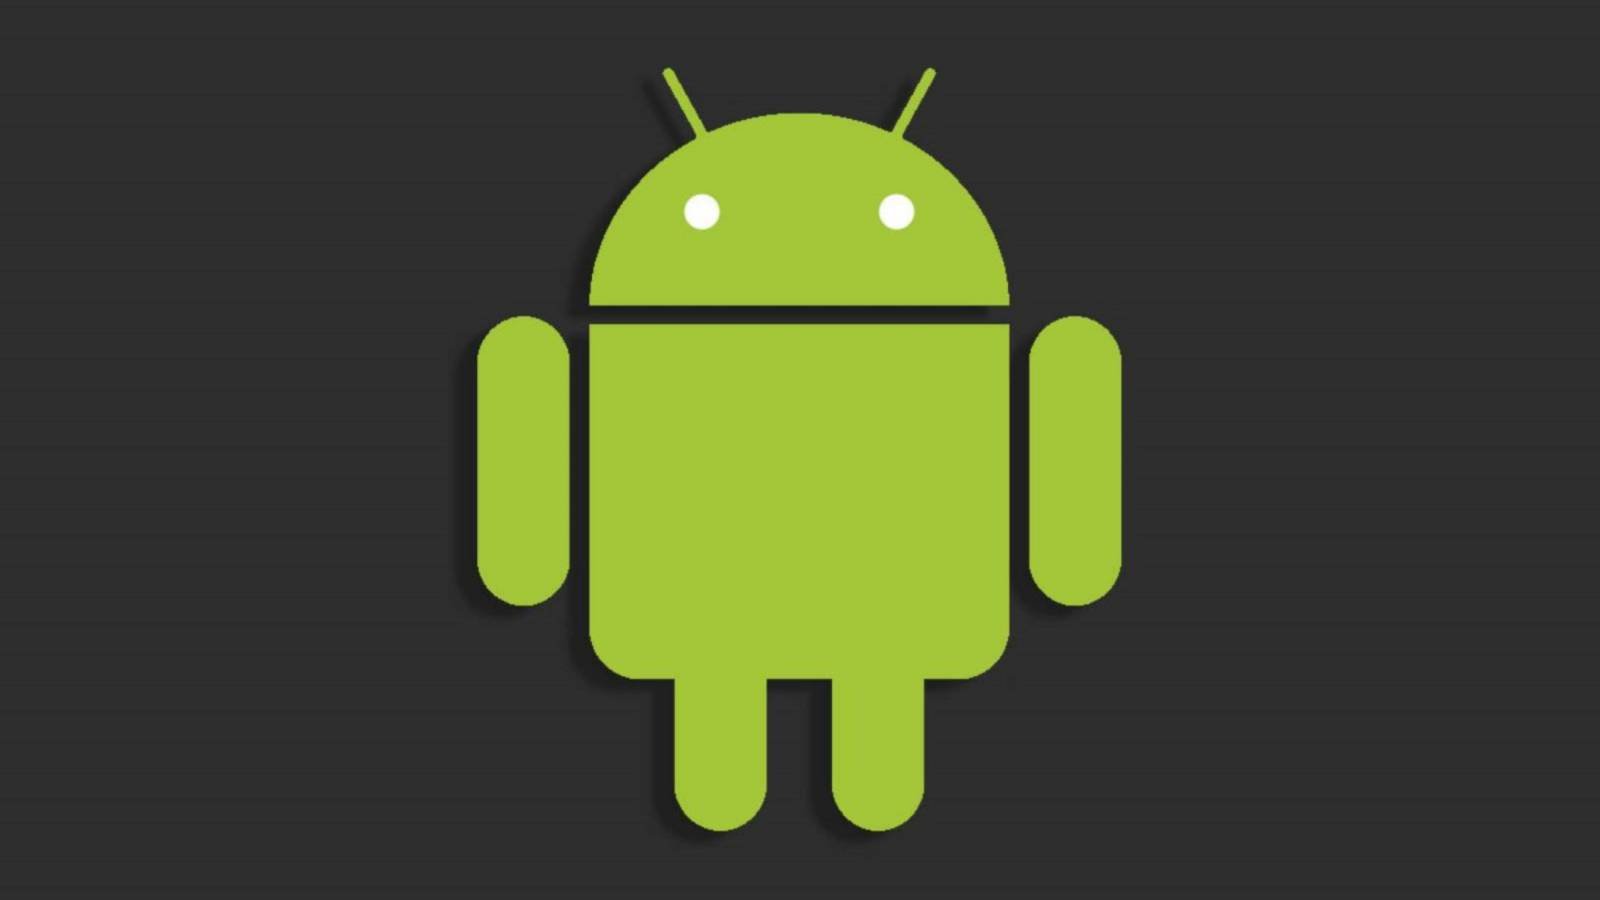 Uusi Android-haittaohjelma, jota käytetään vakoilemaan maailman hallituksia